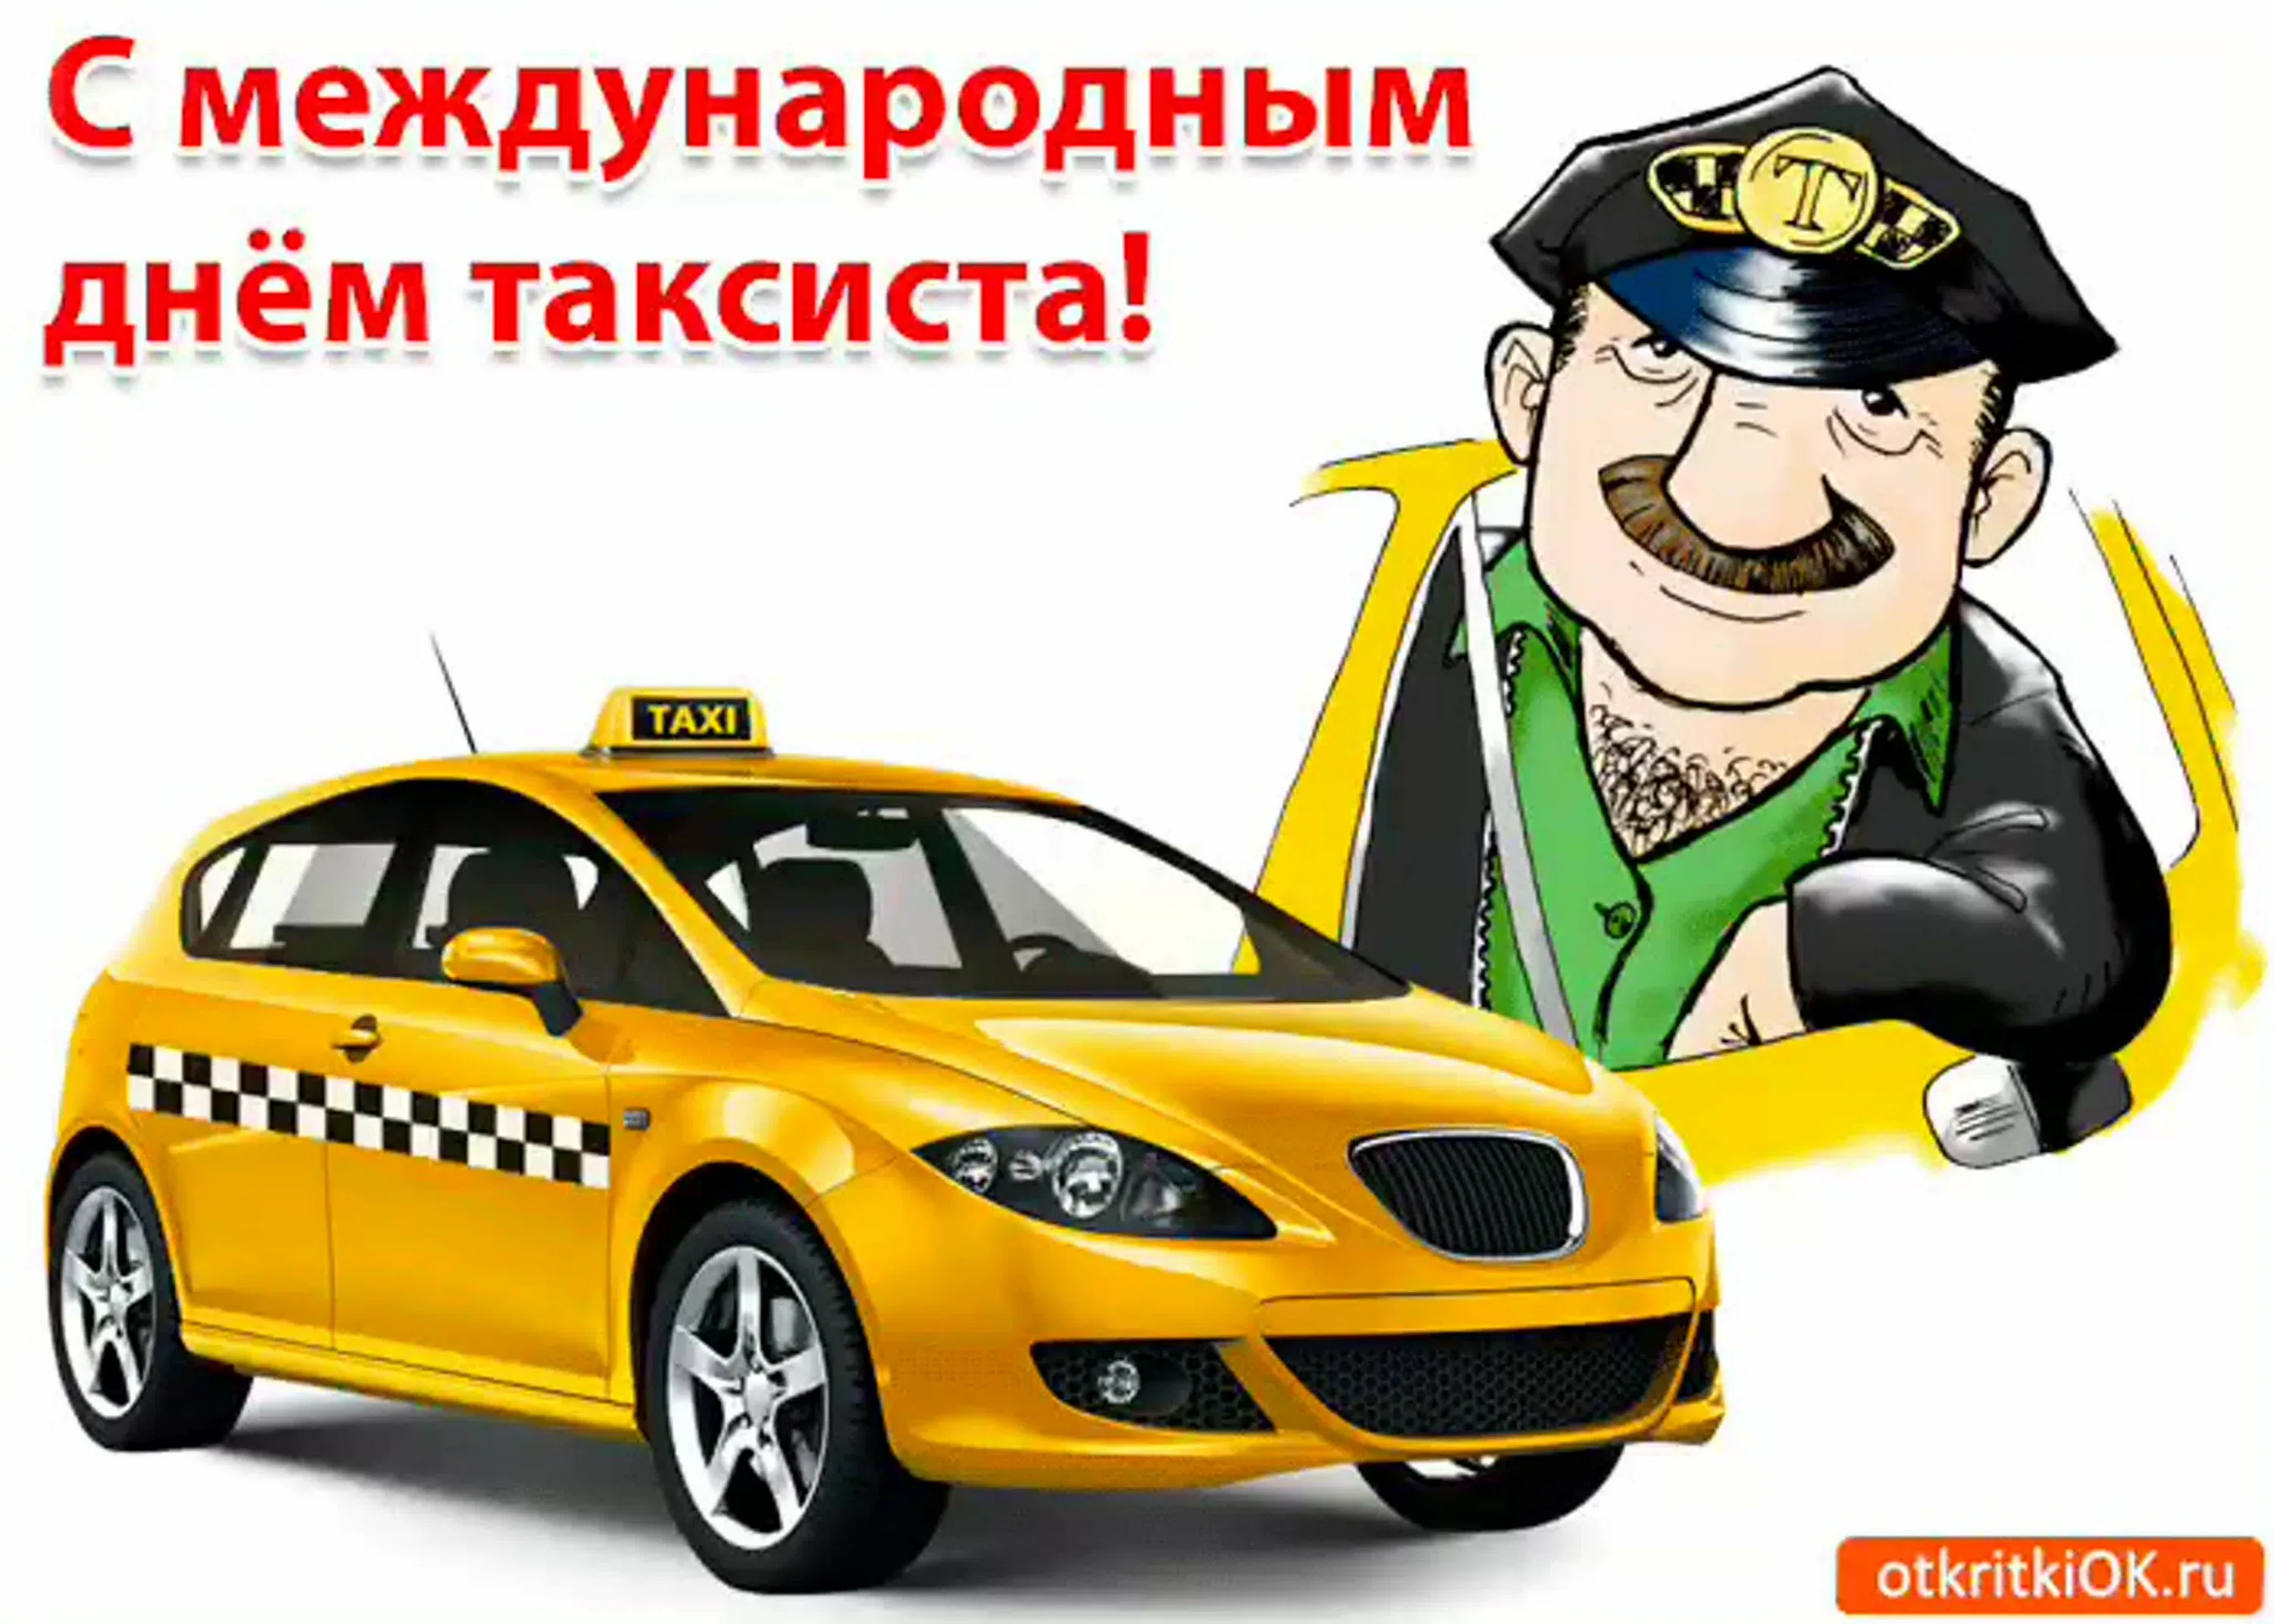 Видео с днем таксиста. День таксиста. Международный день таксиста. С днём таксиста поздравление.